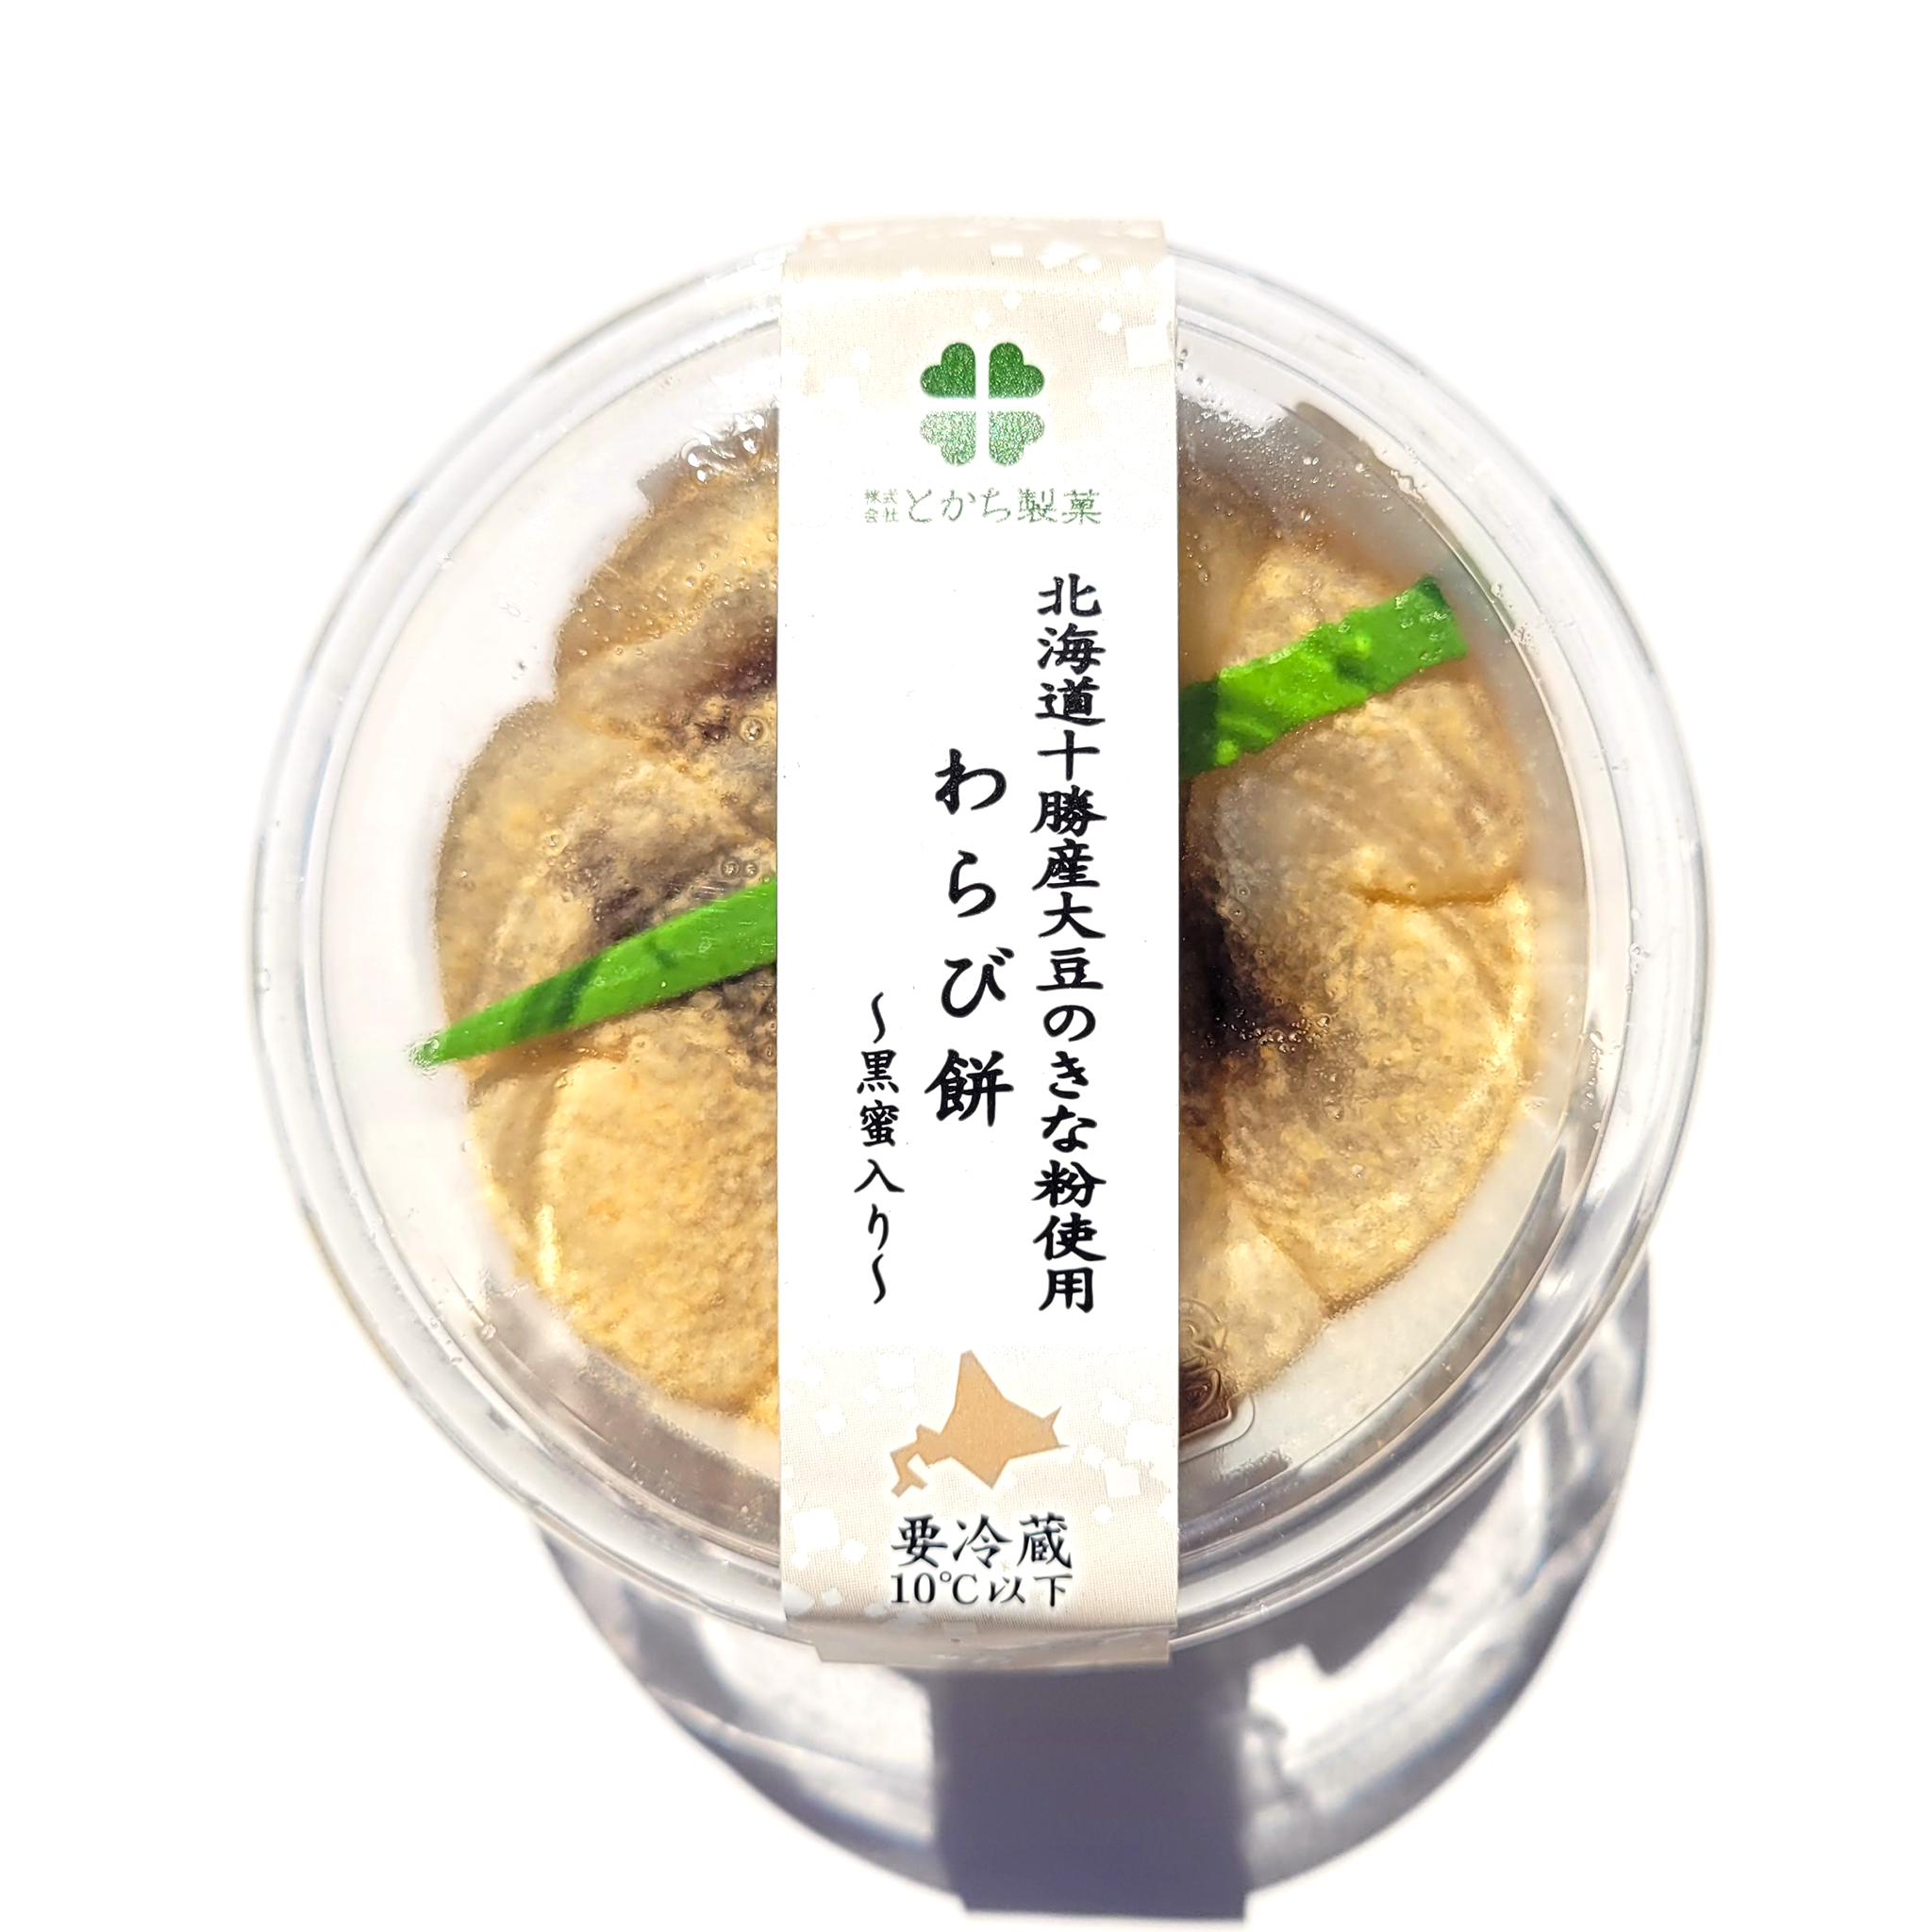 Kit Sushi Tomodachi - Gochiso productos japoneses